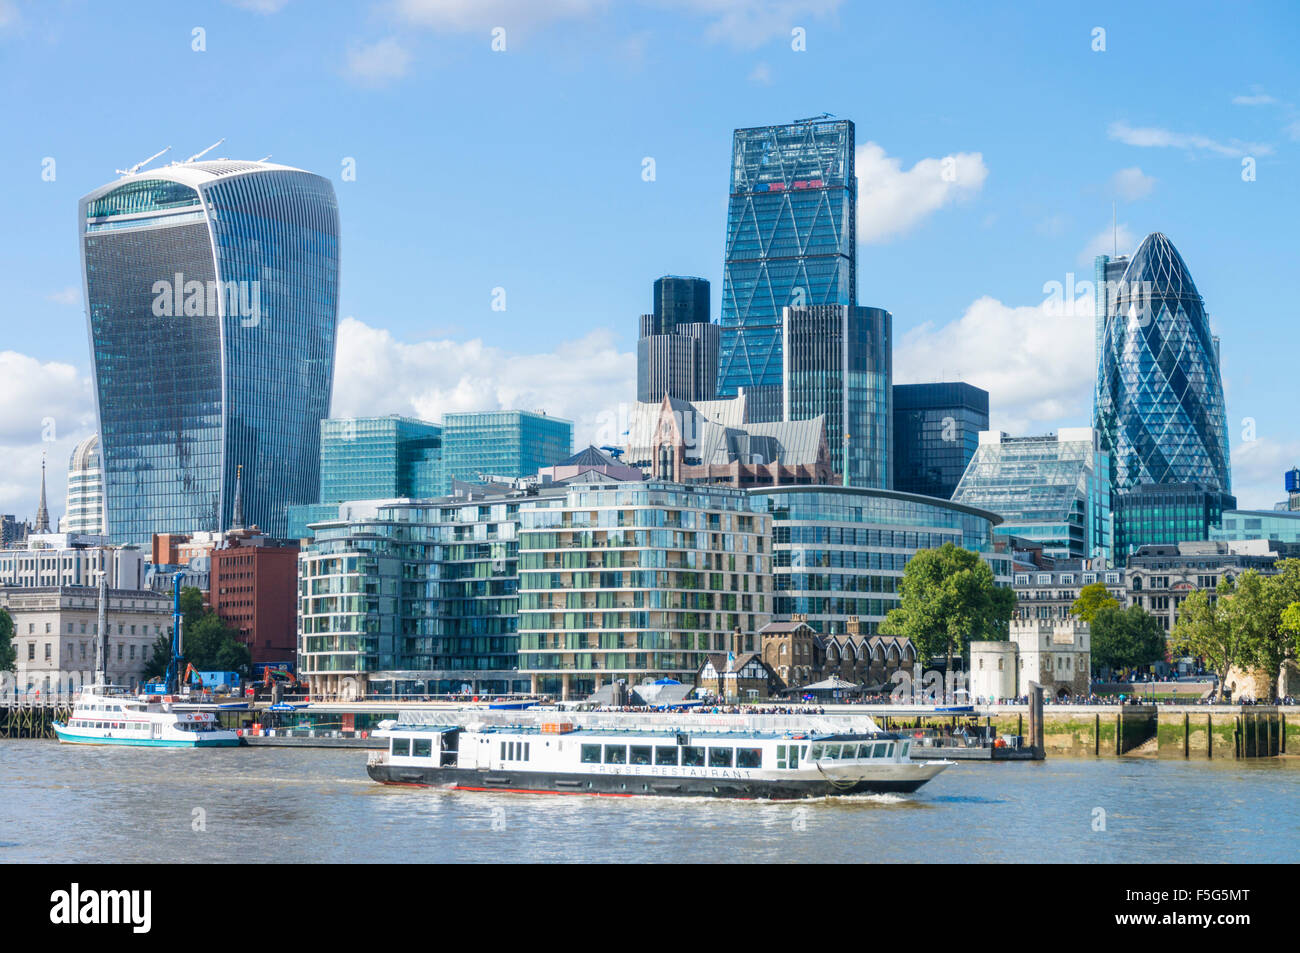 Ville de London Skyline quartier des gratte-ciel Tamise Ville de London UK GB EU Europe Banque D'Images